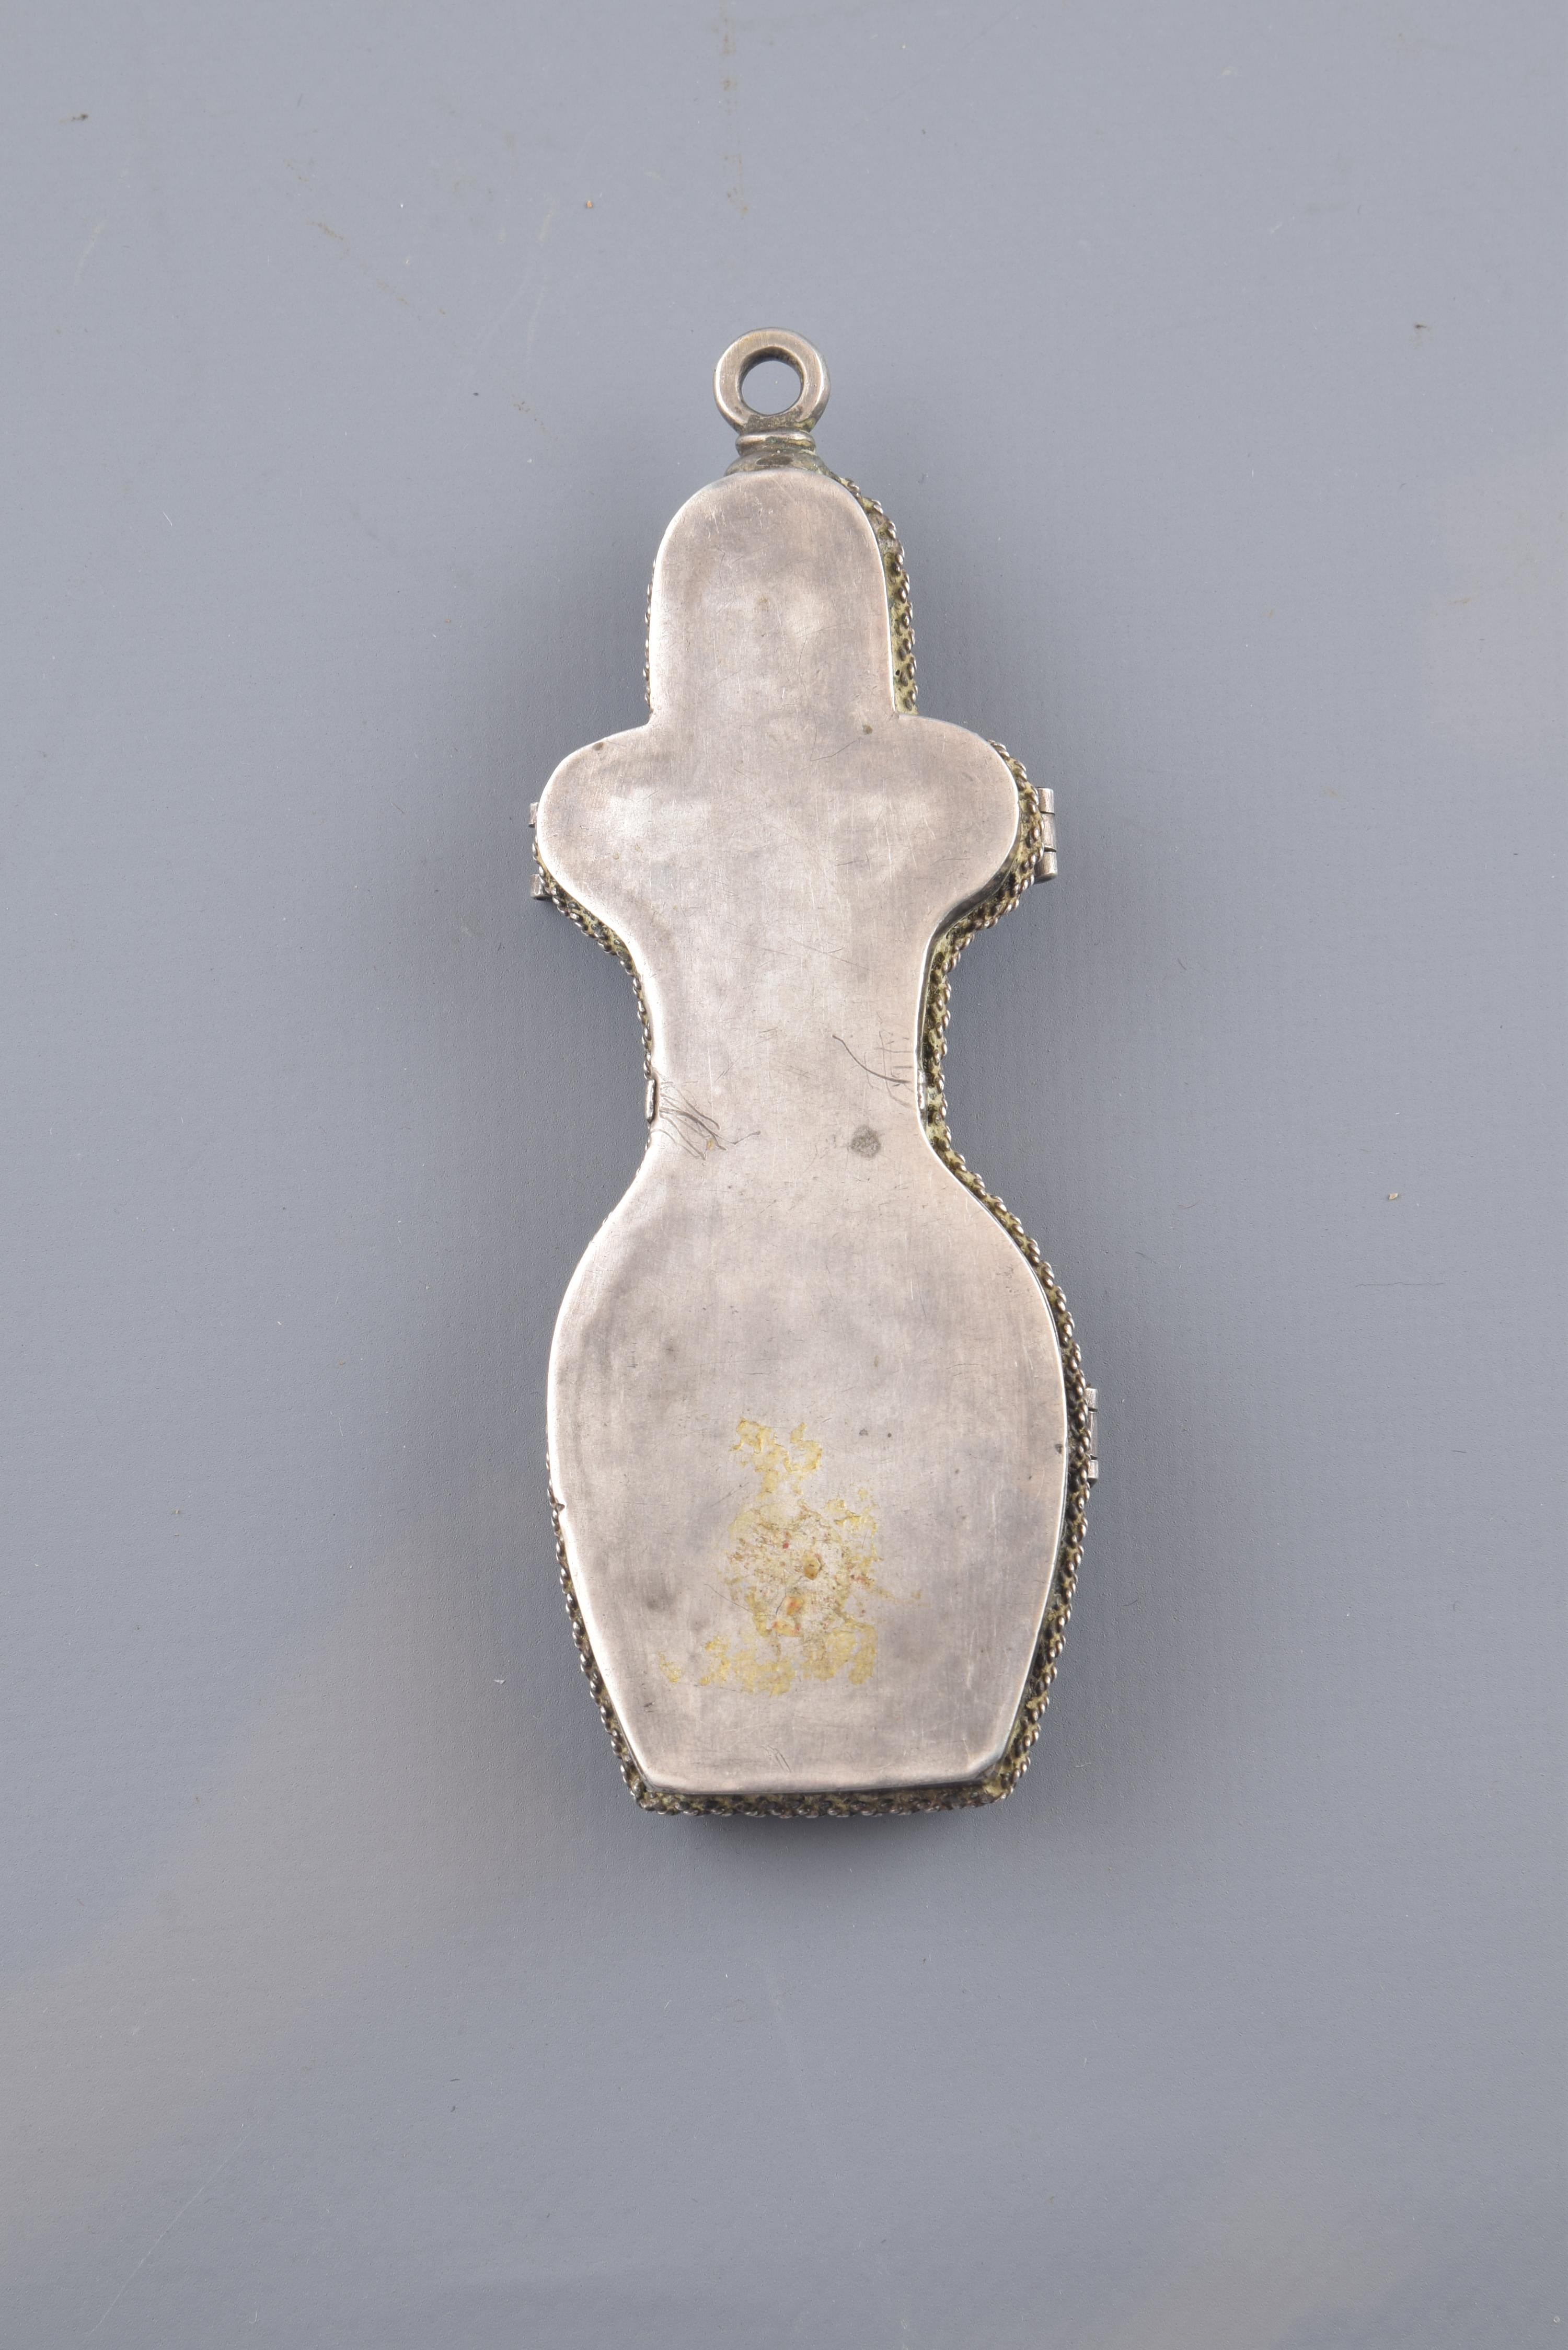 European Devotional Pendant Silver, Wood, Textile, 17th Century